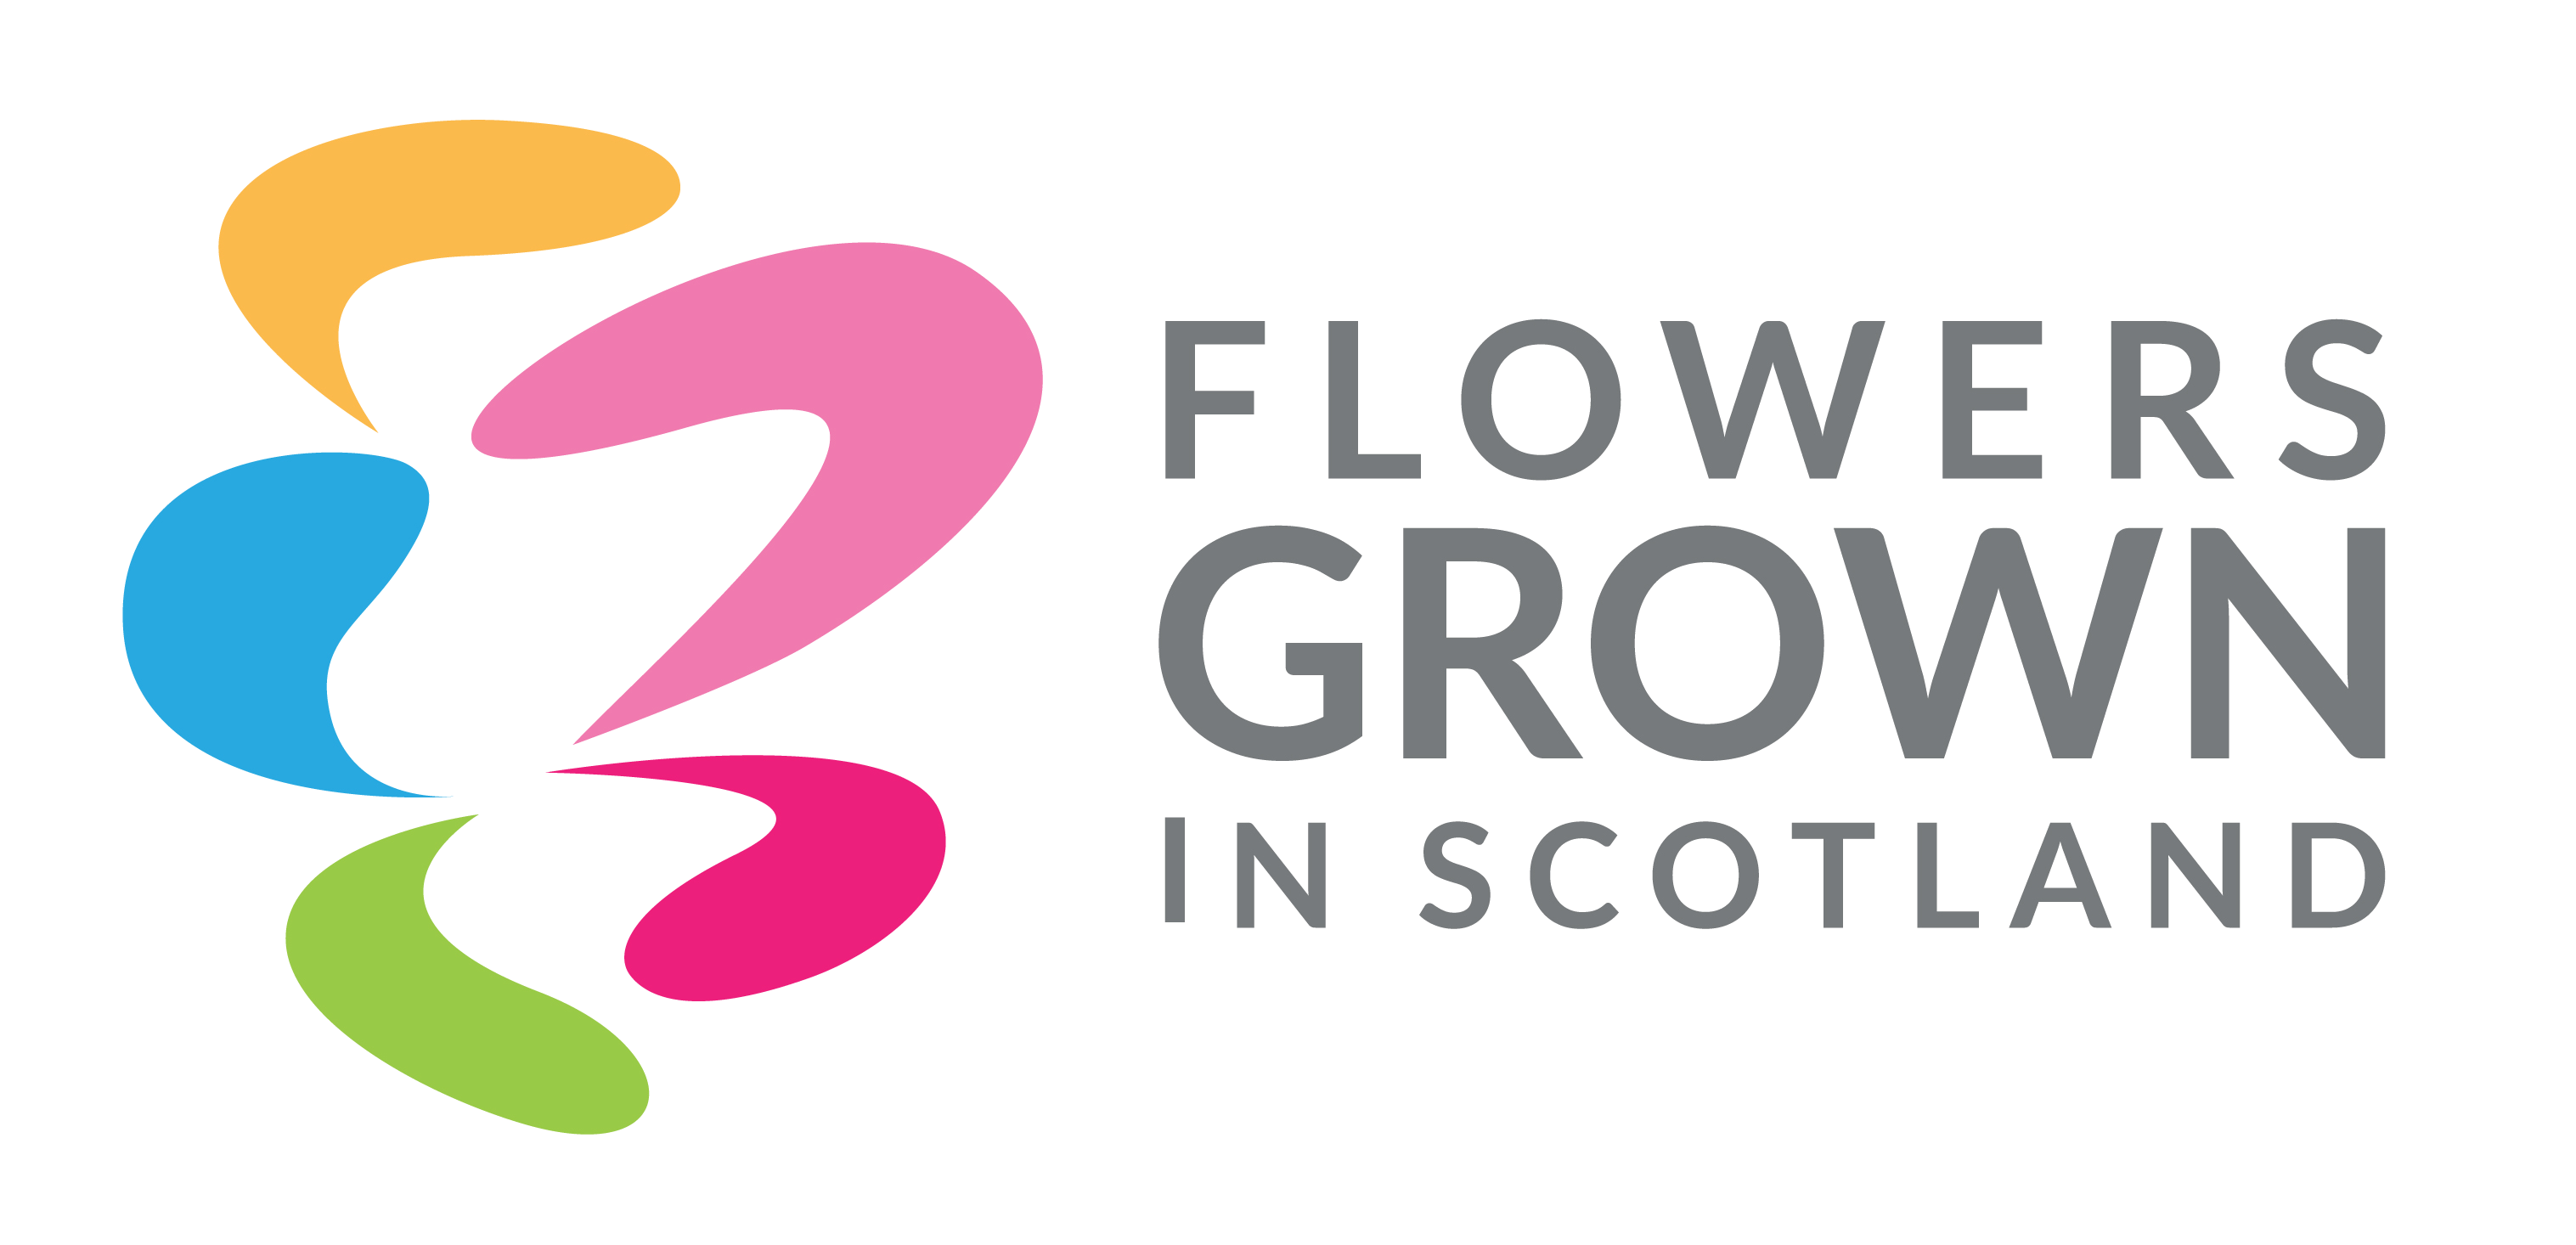 Flowers Grown in Scotland Member